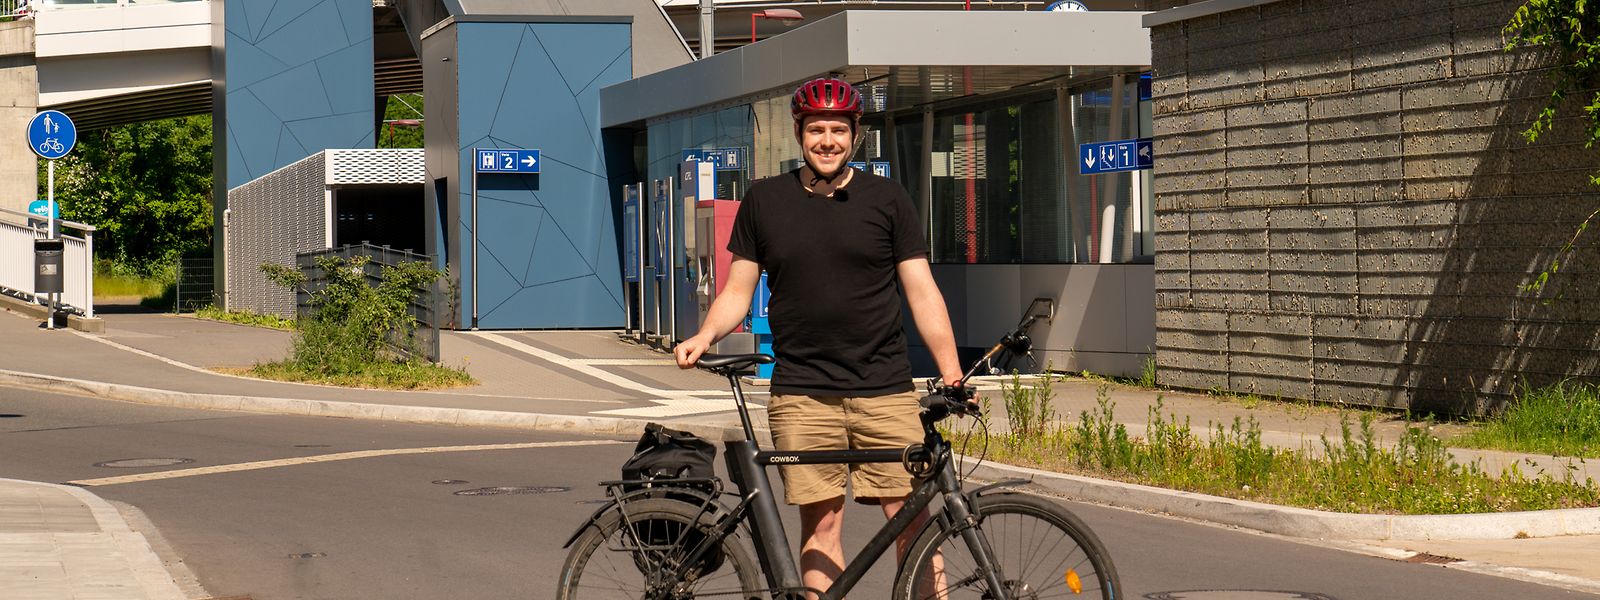 Wie lebt es sich mit dem Fahrrad? Neckel Muller erzählt von seinem Leben ohne eigenes Auto.